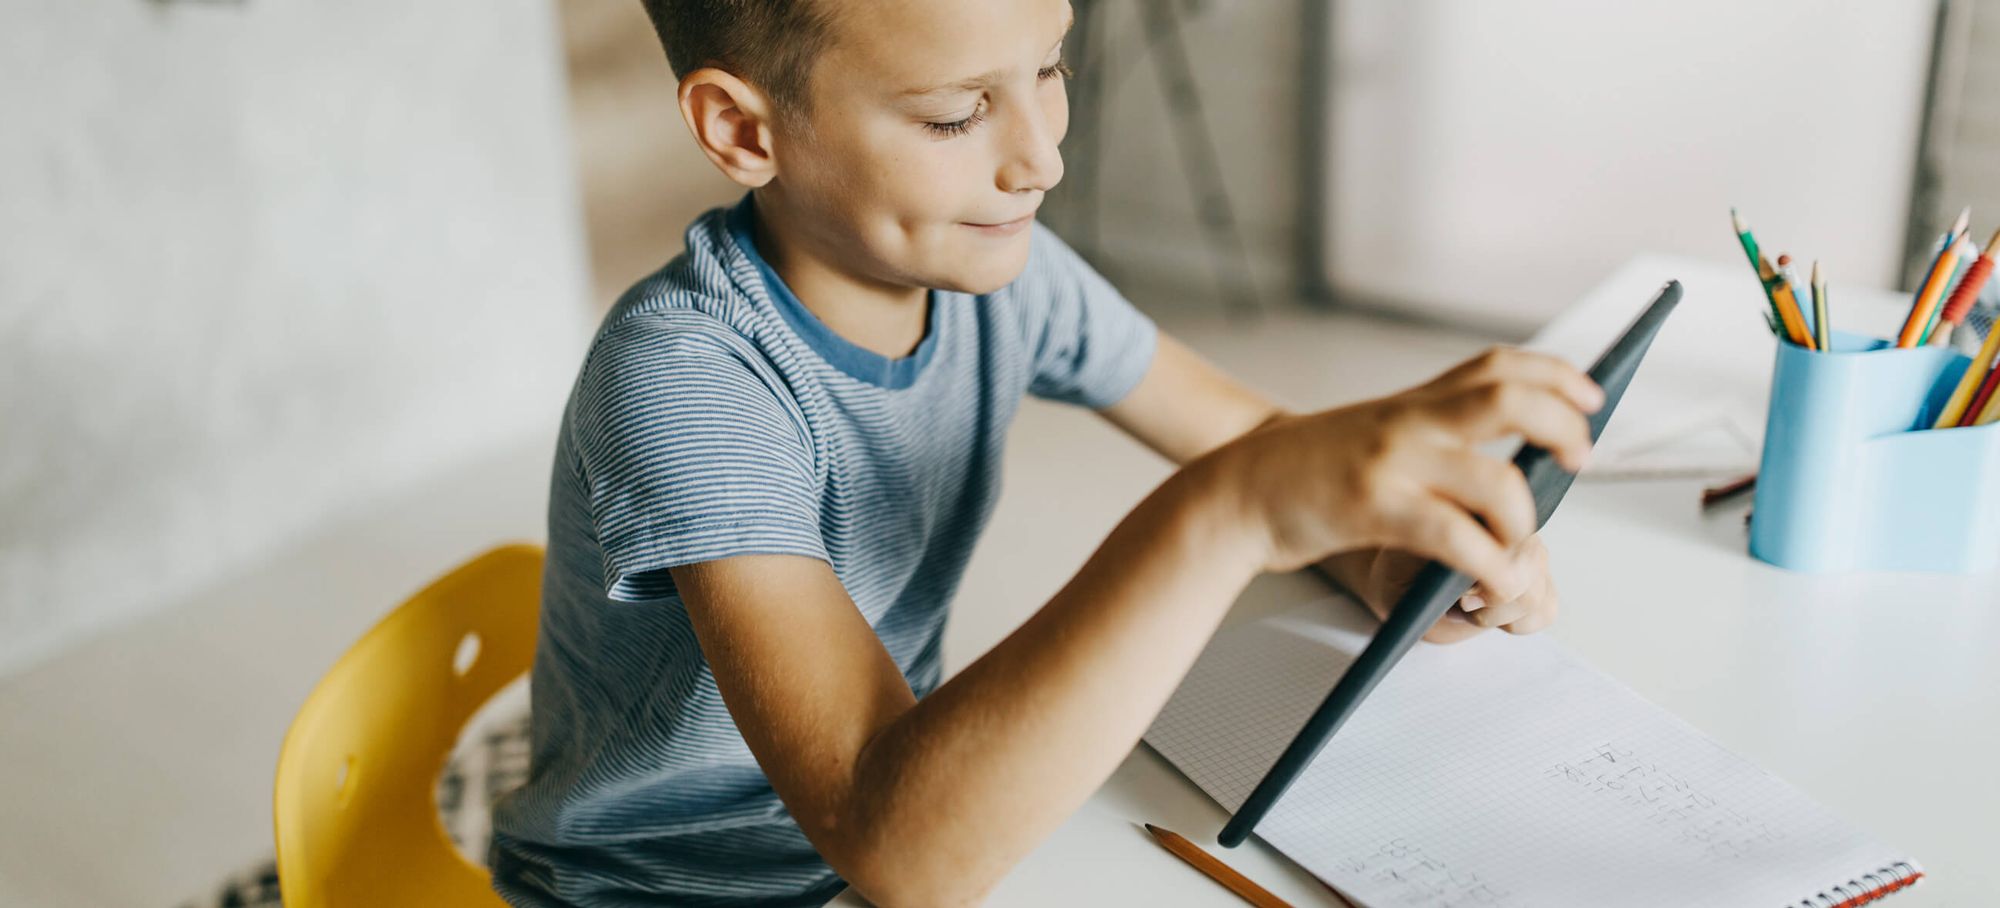 Also Schweiz und Base-Net Firmen starten Tablet-Aktion für Schulen